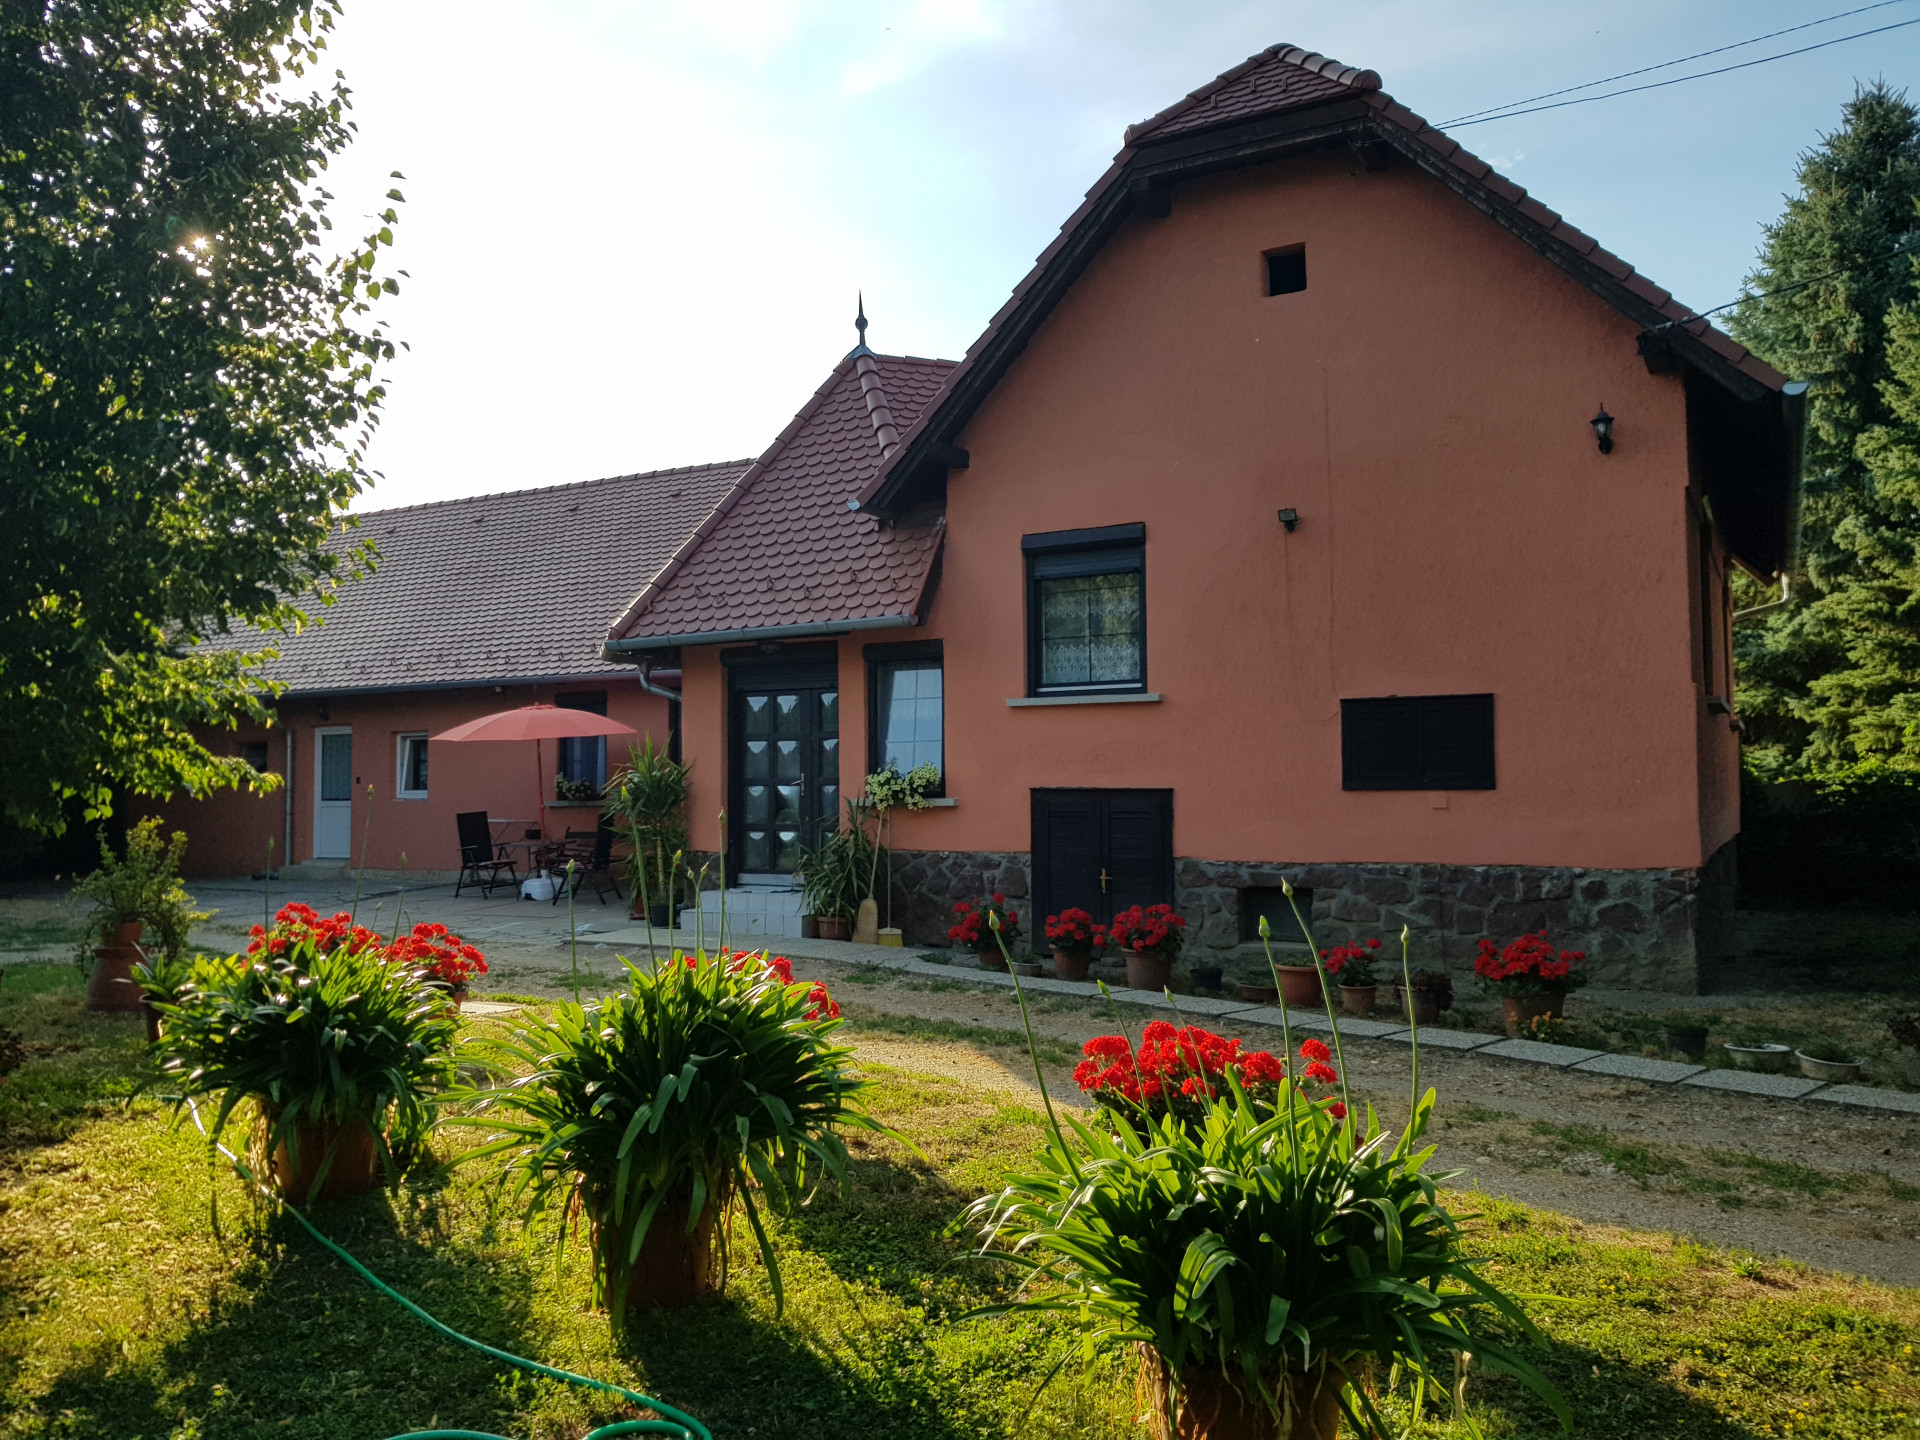 Egyházasfalu Eladó  Családi ház  Egyházasfalu Eladó  Családi ház Győr-Moson-Sopron megye 